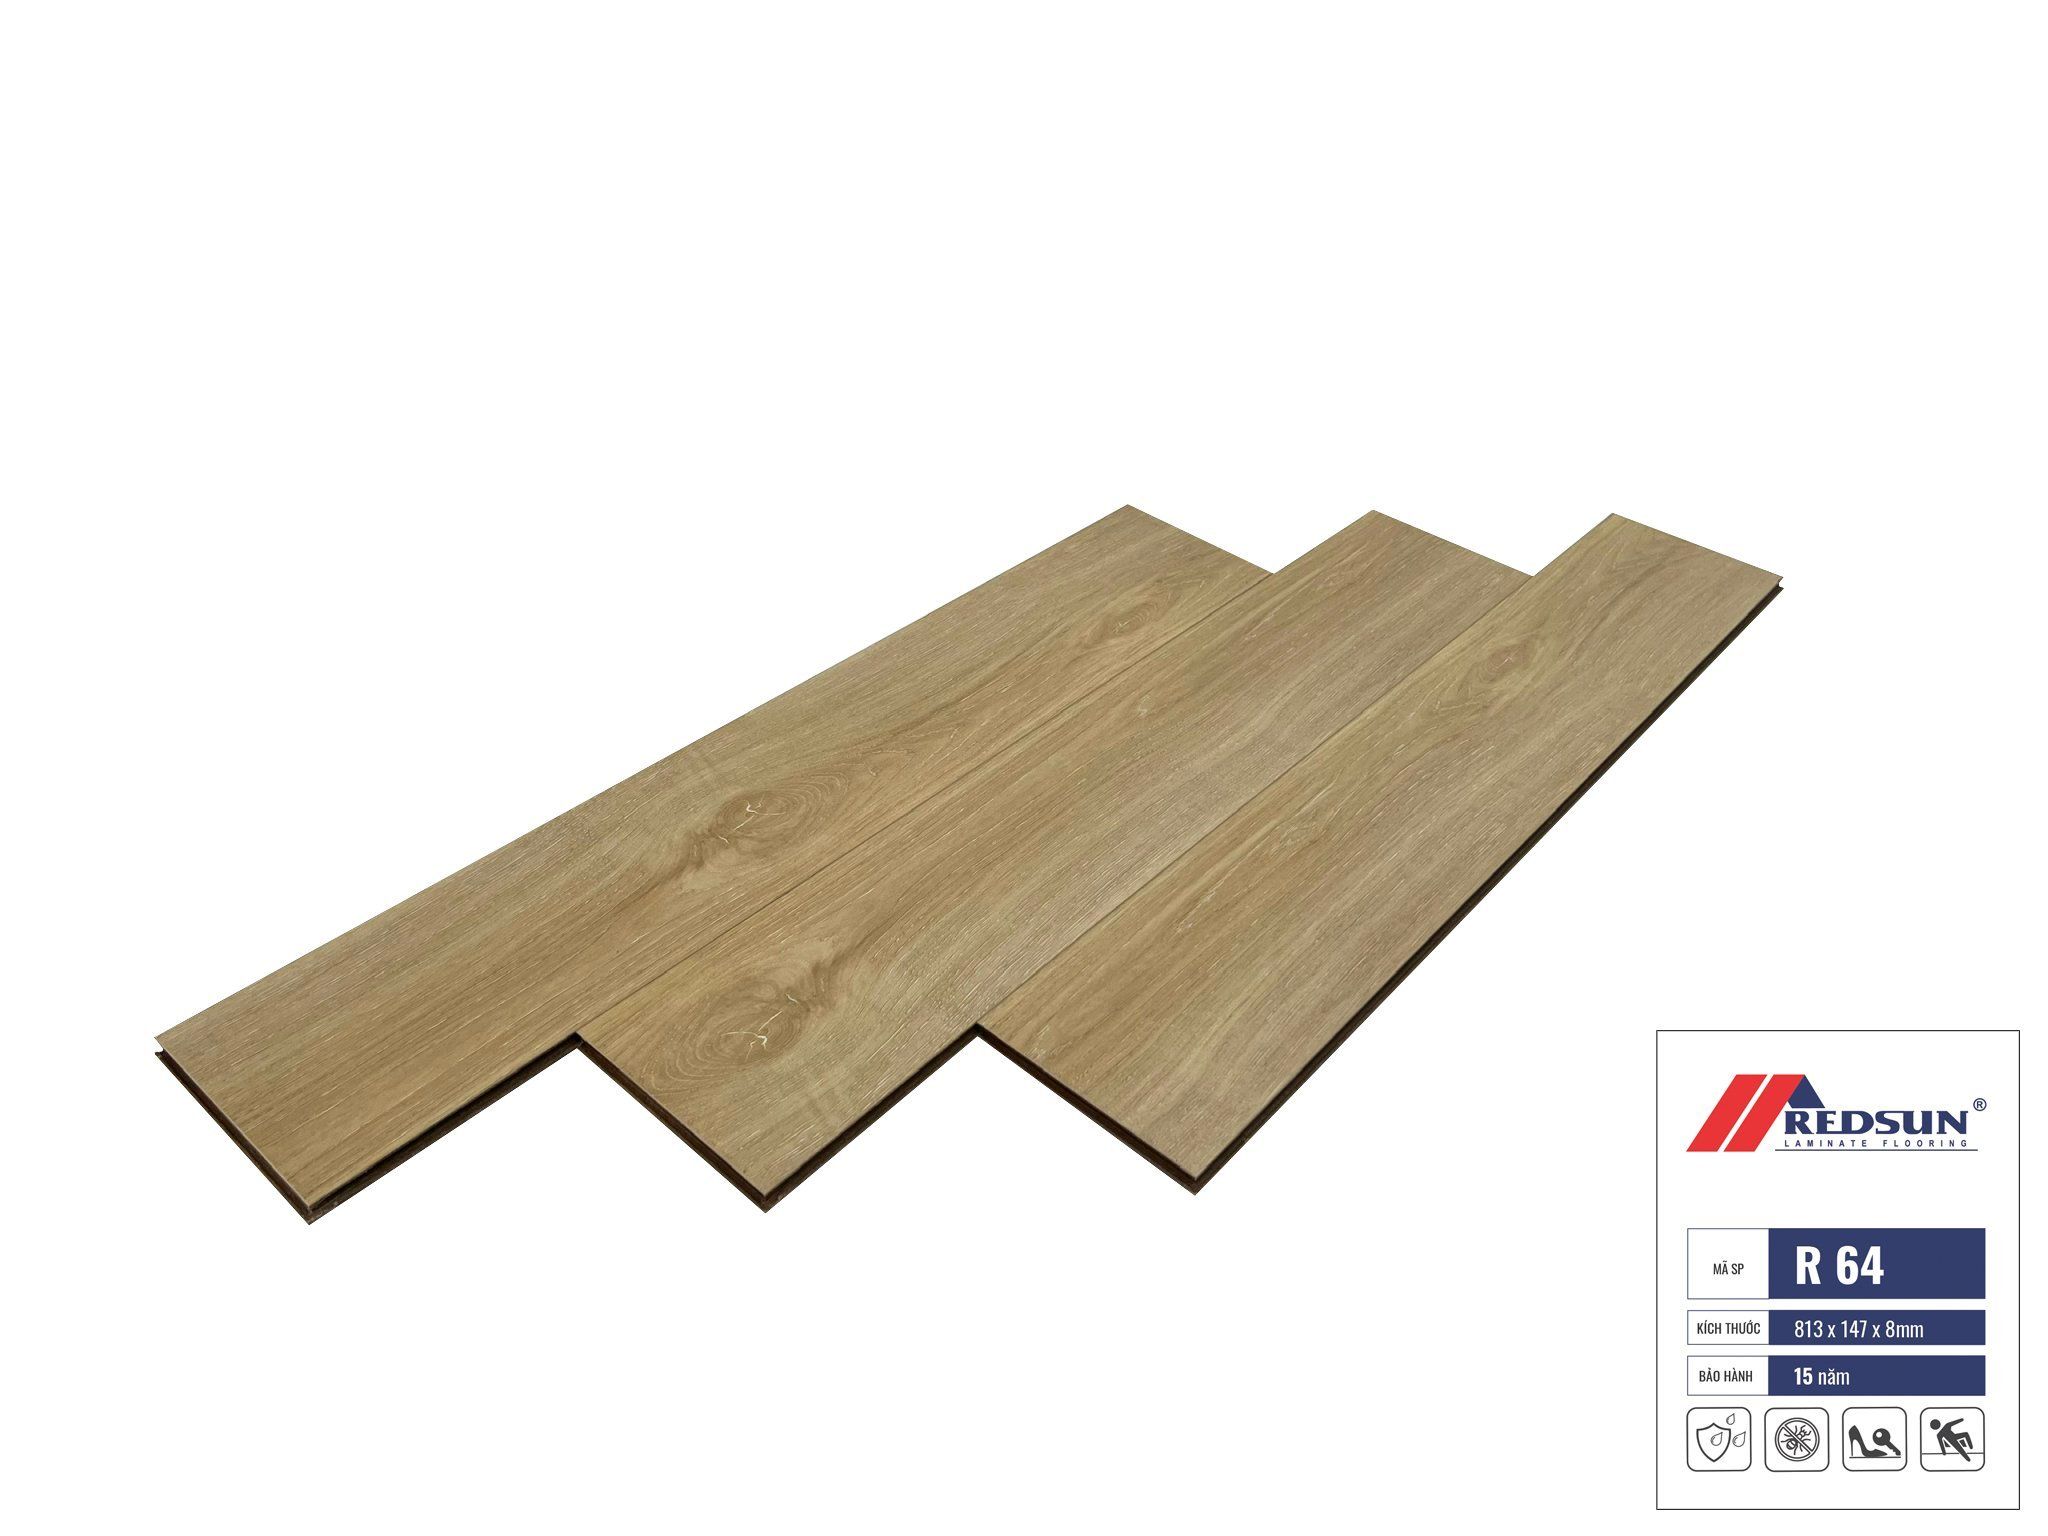  Sàn gỗ Redsun – R64 